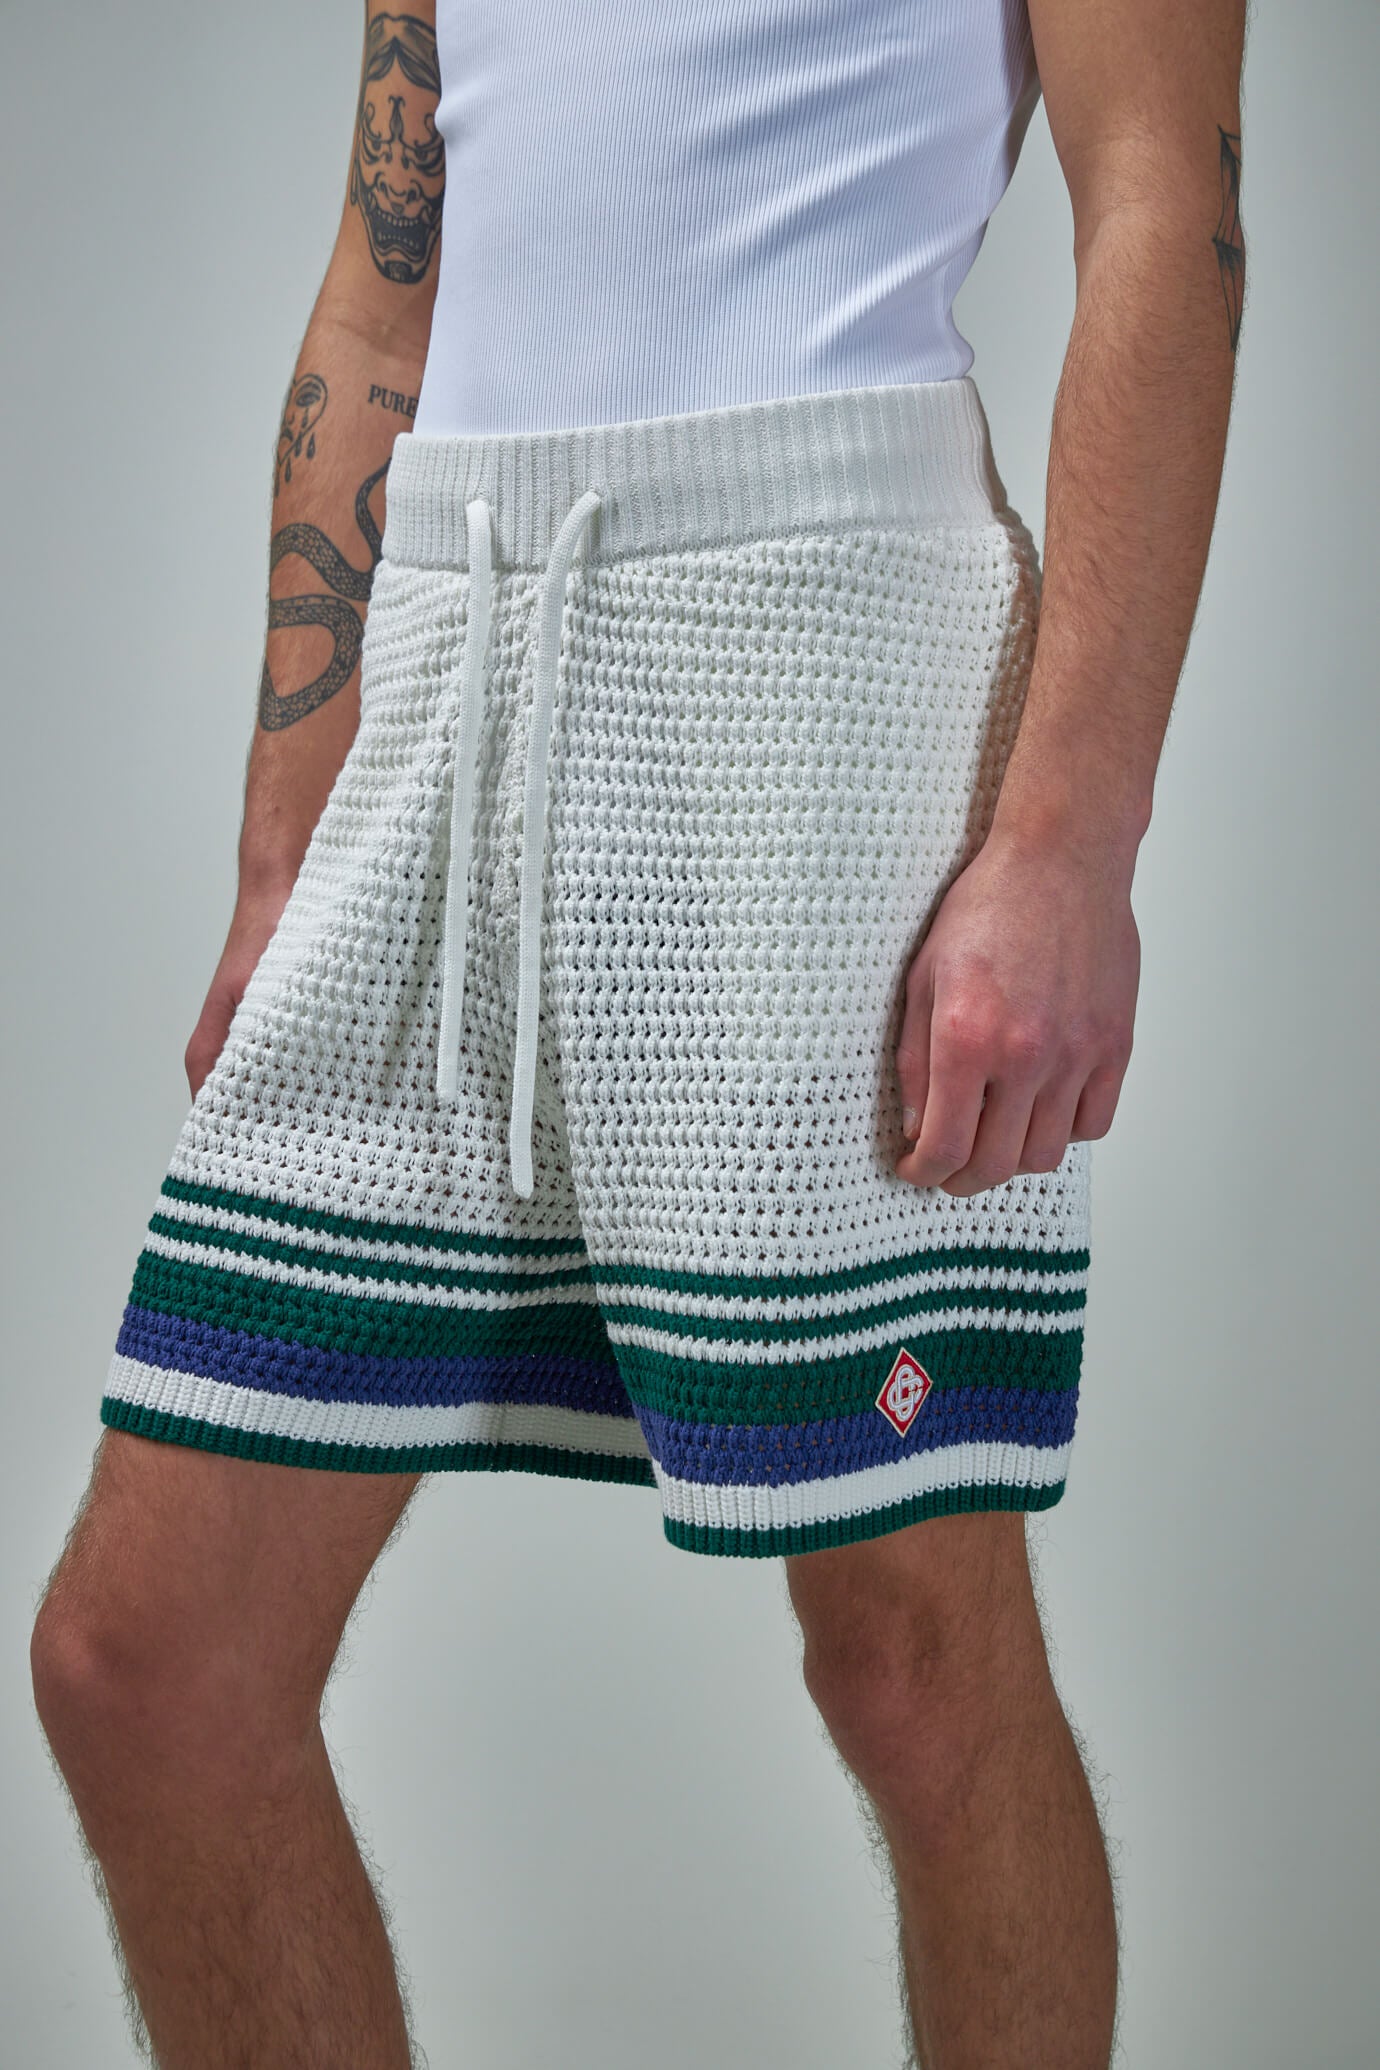 Crochet Effect Tennis Shorts